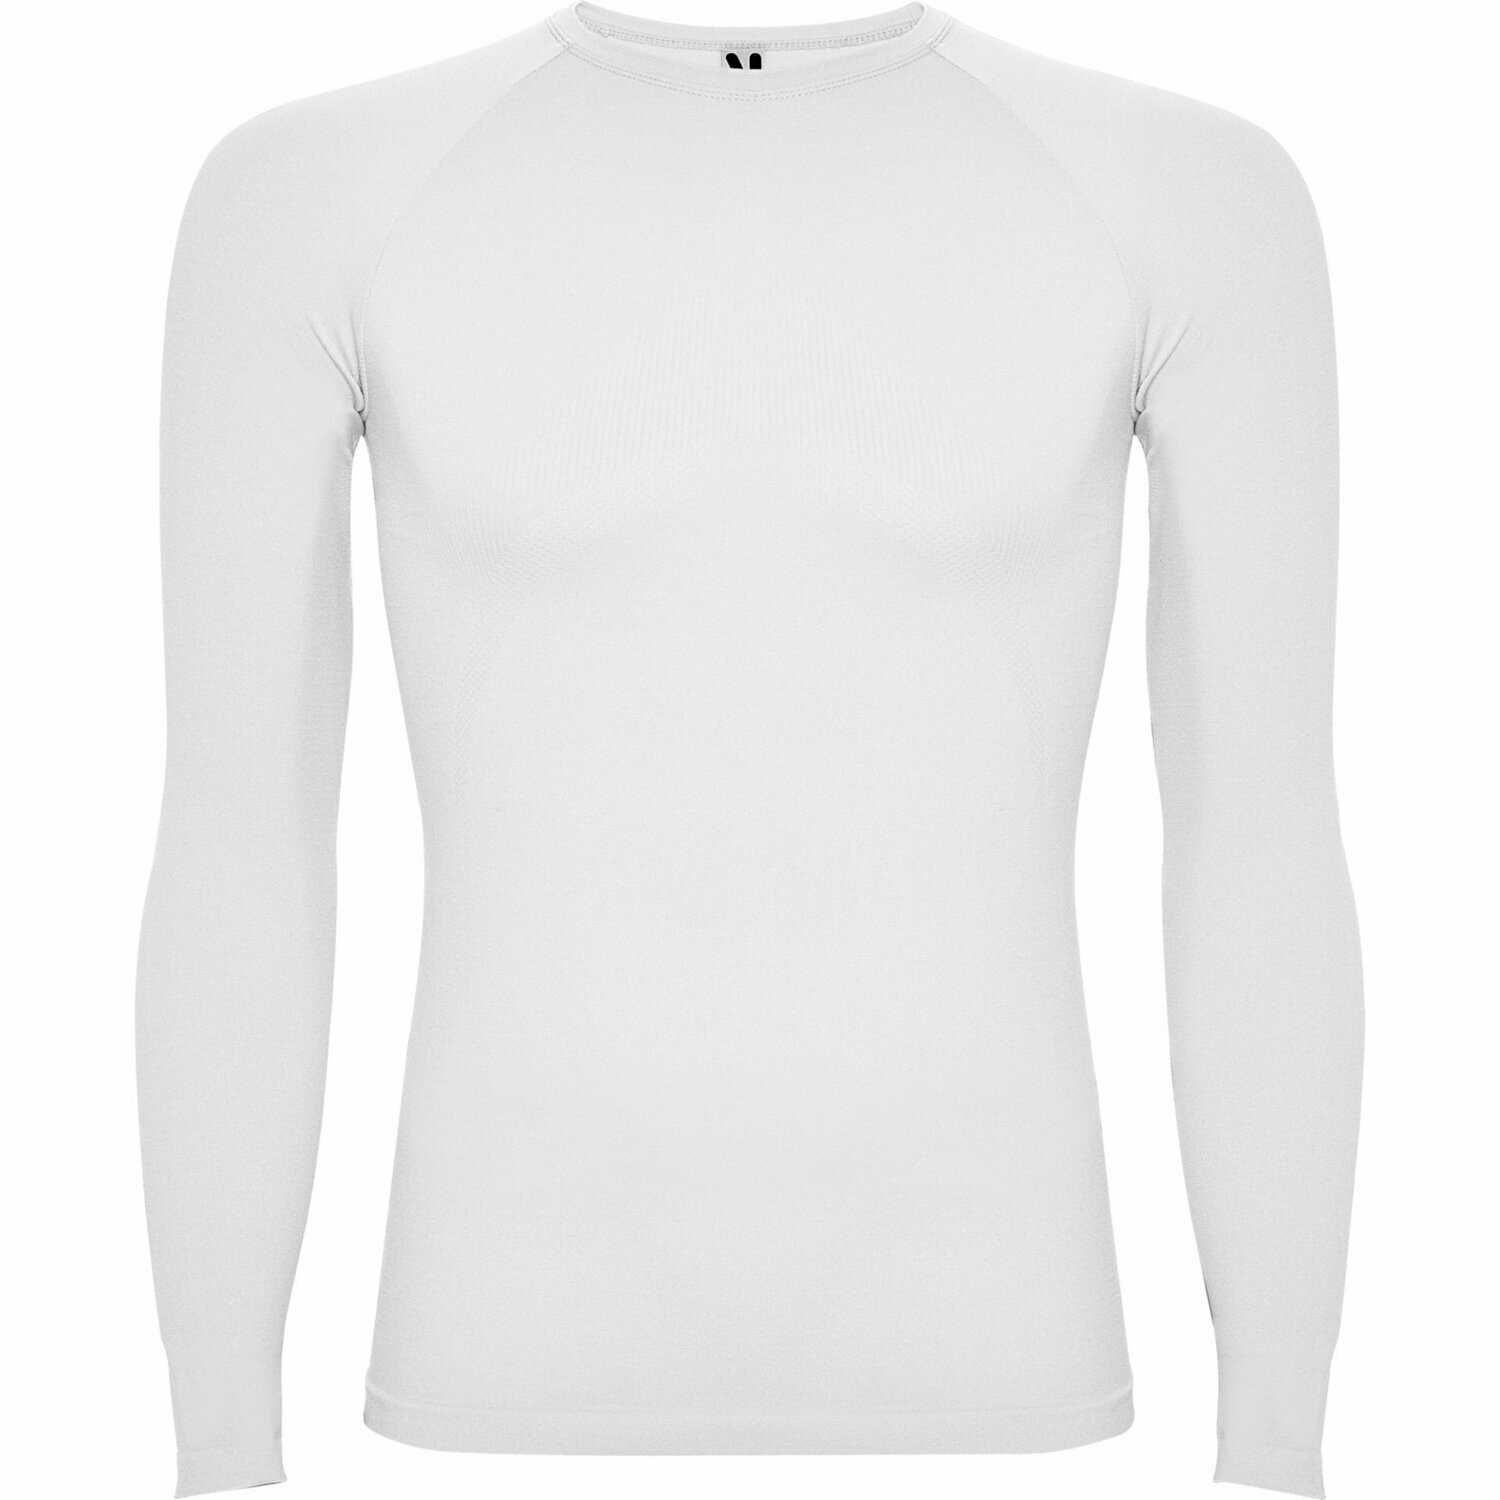 Camiseta térmica M/L Roly Prime, COLORES: Blanco